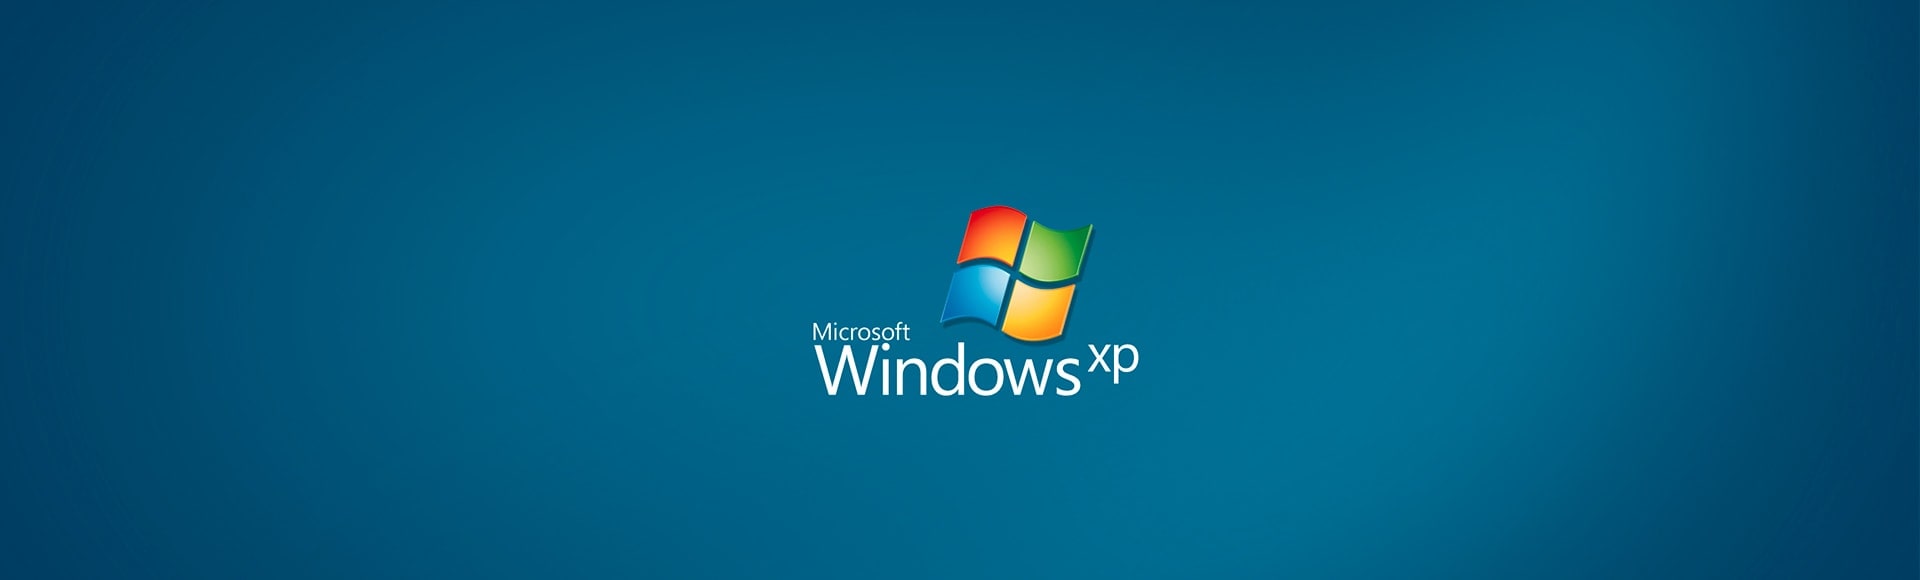 Installation et mise à jour de Windows Xp